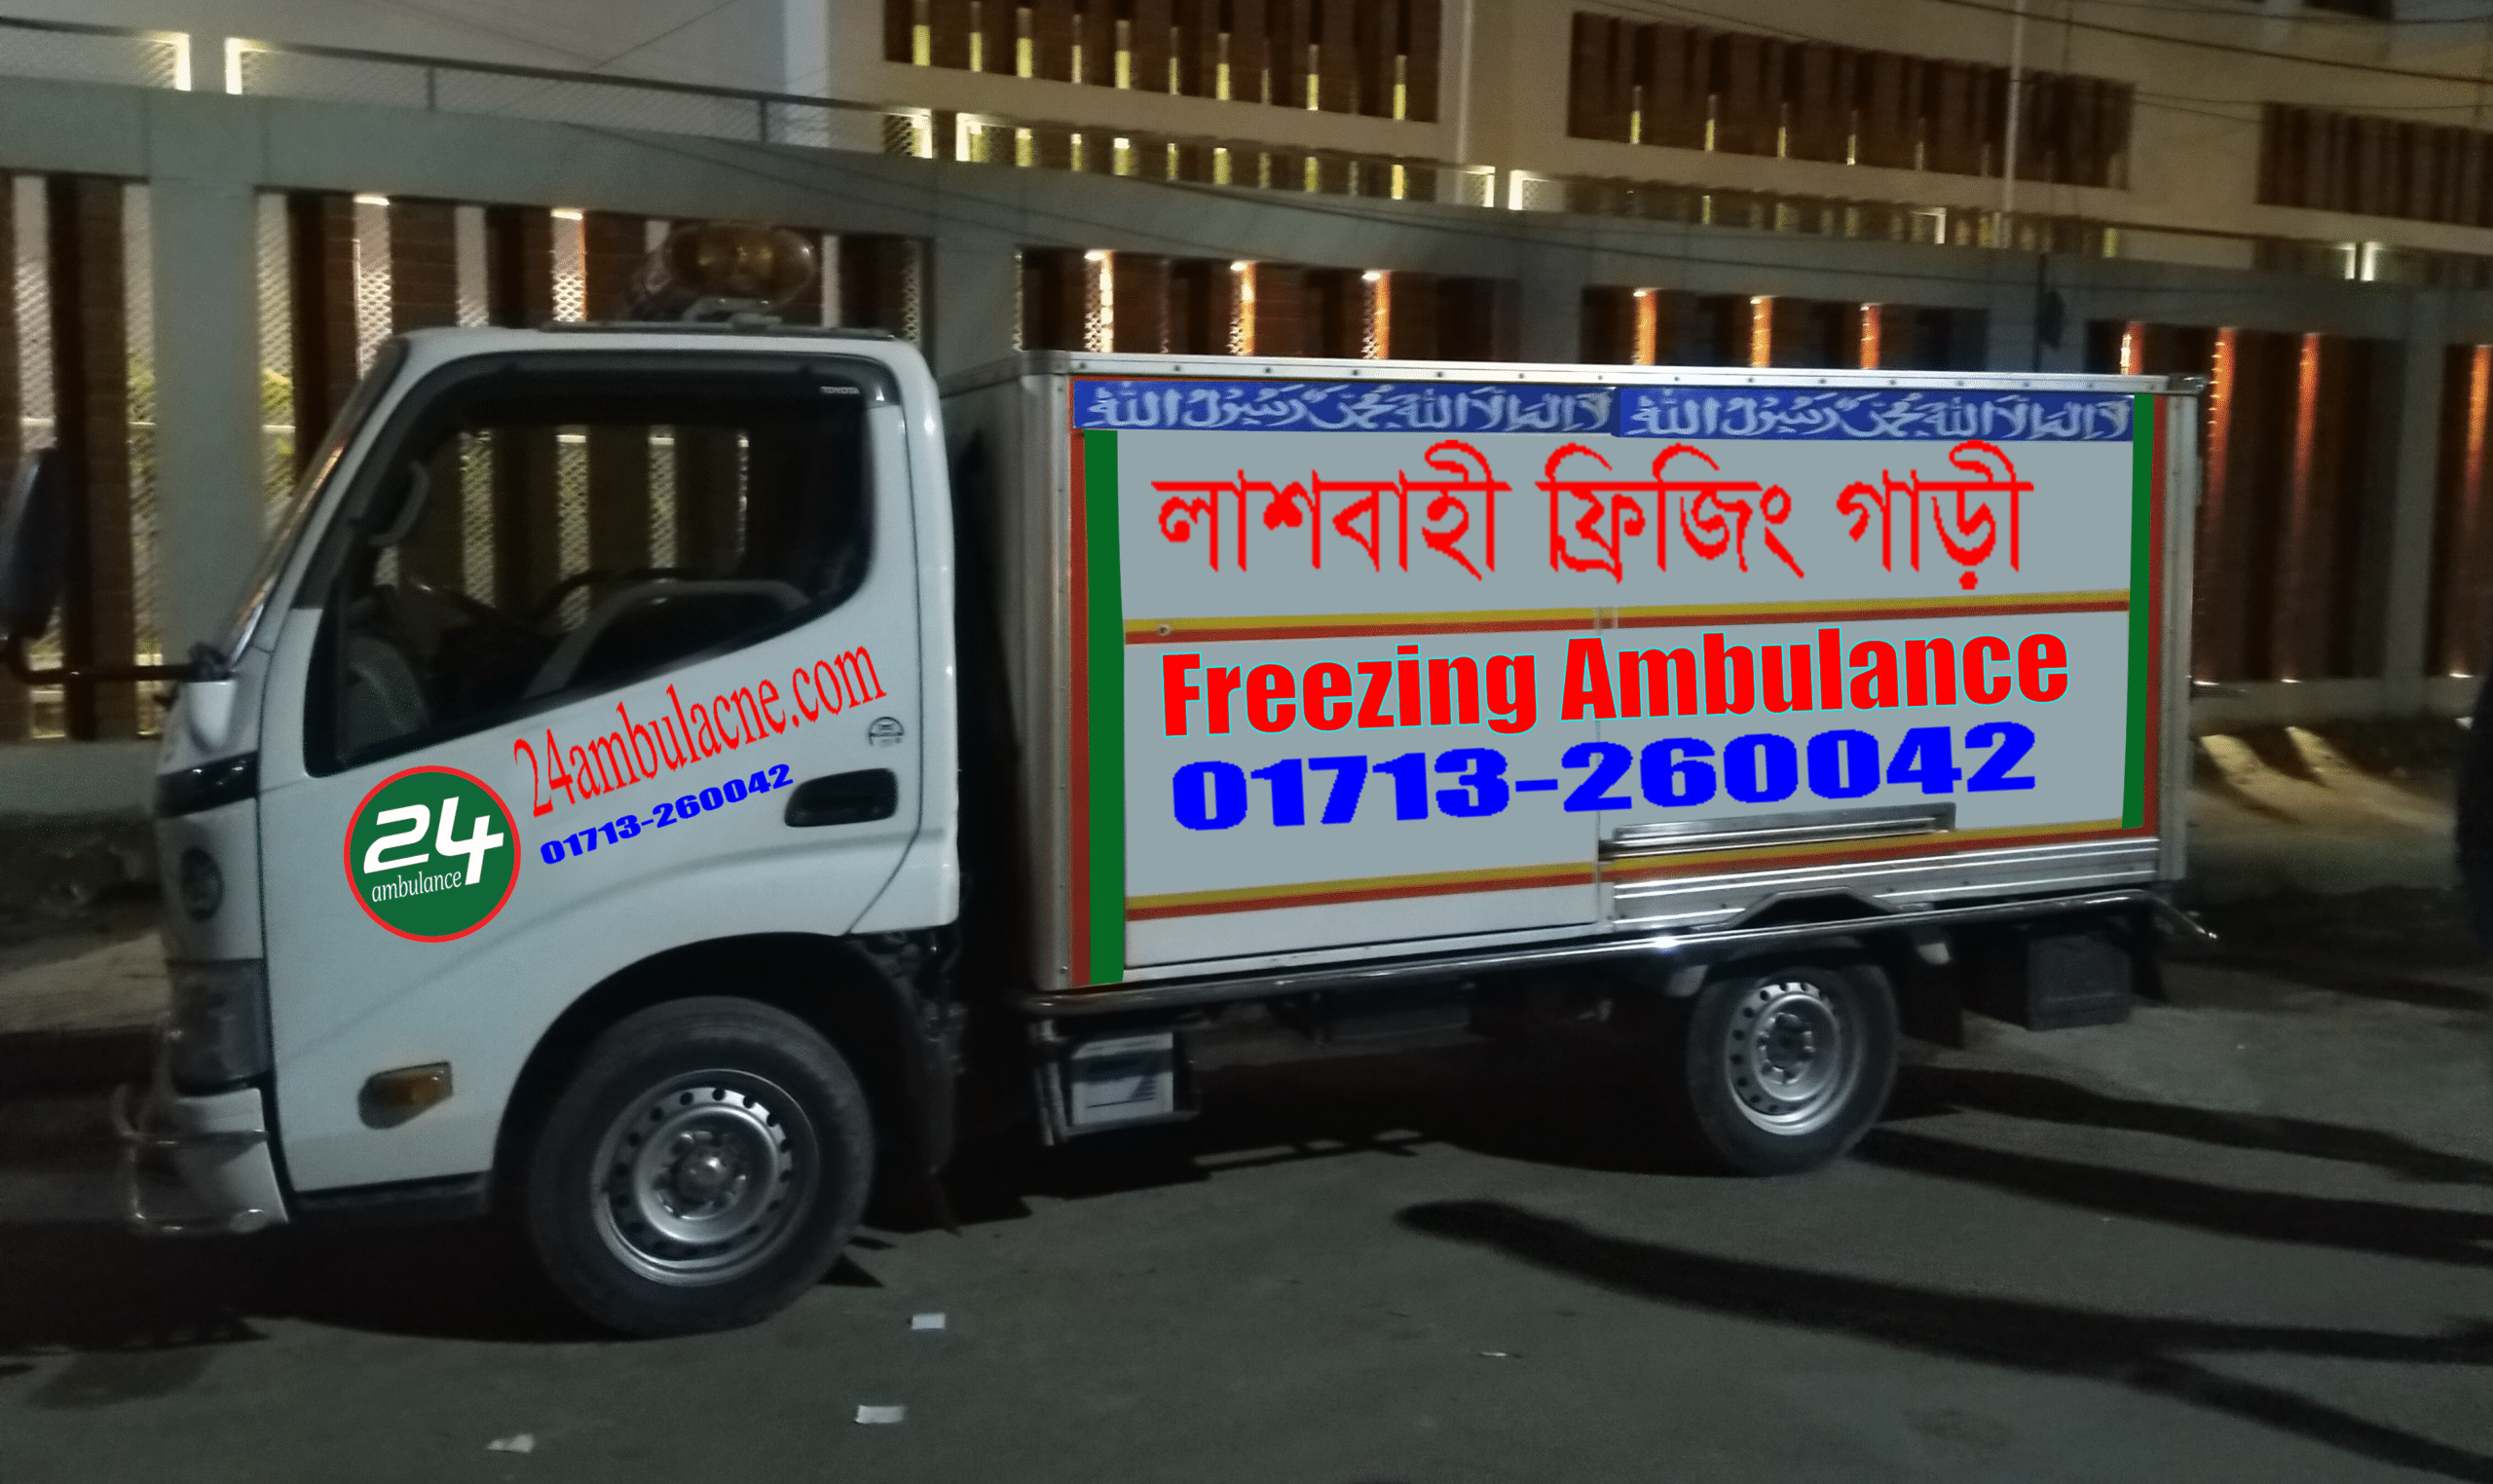 Ambulance Service in Bangladesh-freezer ambulance